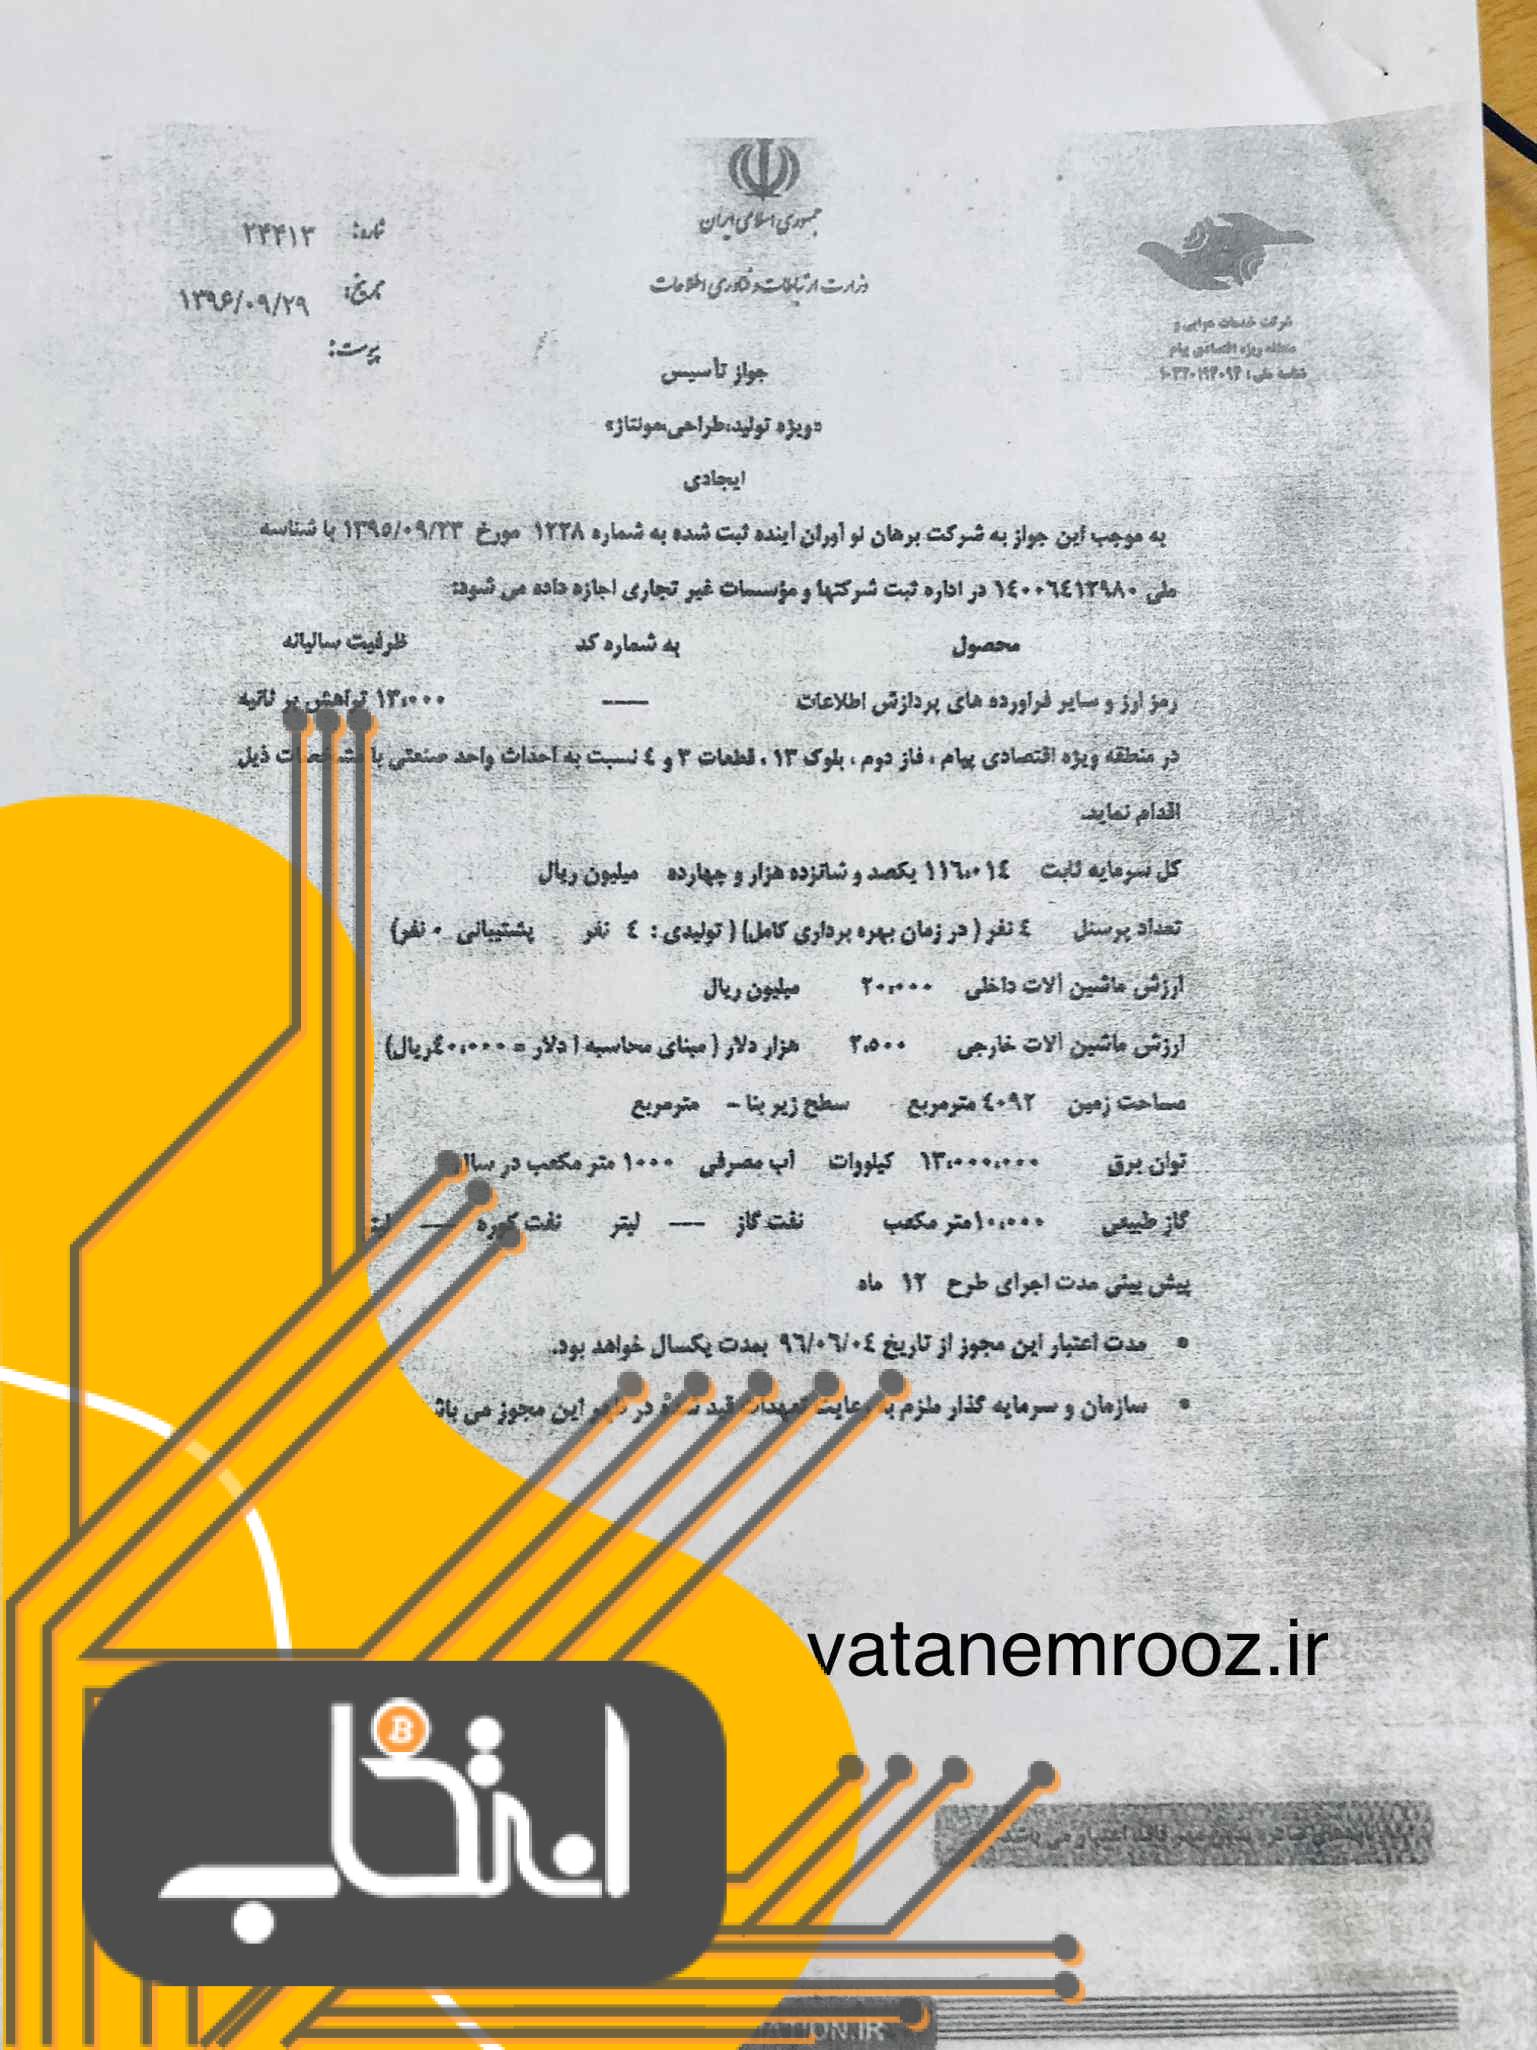 صدور مجوز تاسیس فارم استخراج بیت کوین در سال 96 توسط وزارت ارتباطات+سند